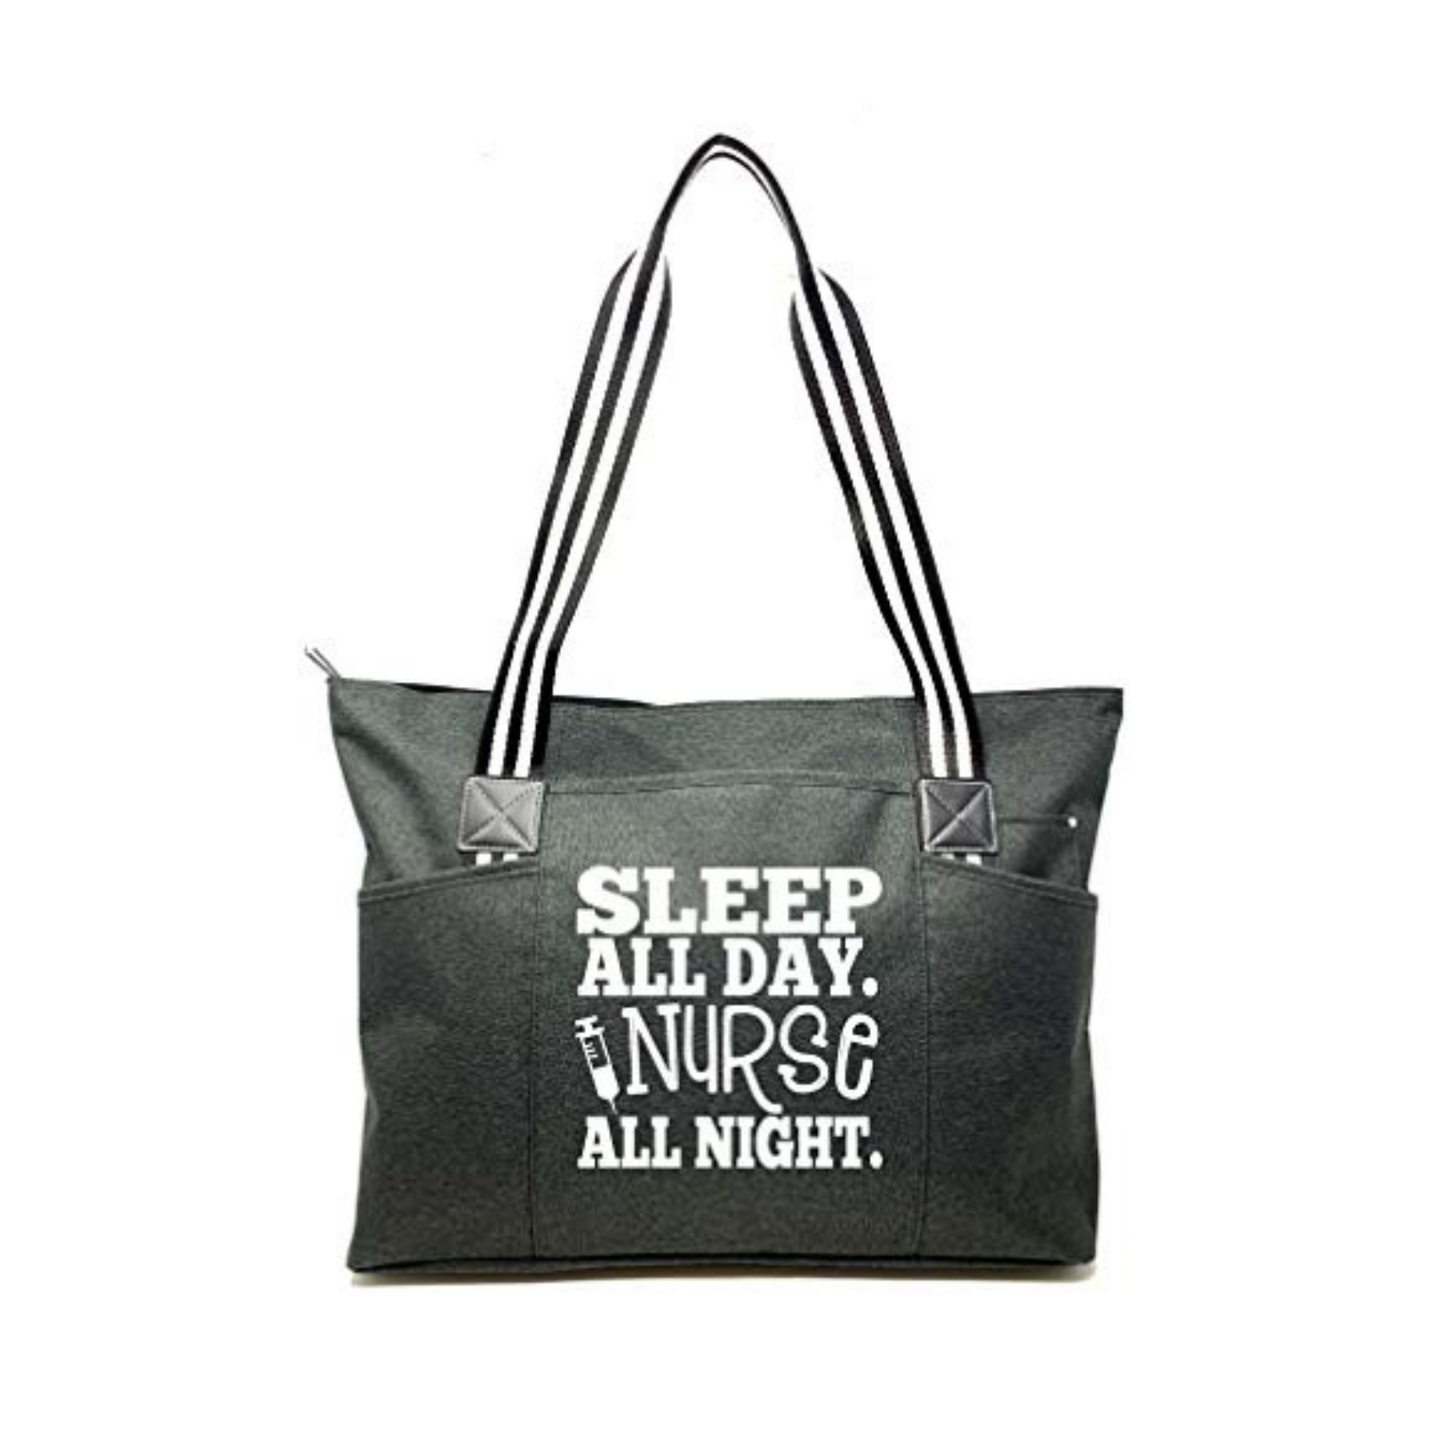 Sleep All Day Nurse All Night Tessa Black Tote Bag for Nurses